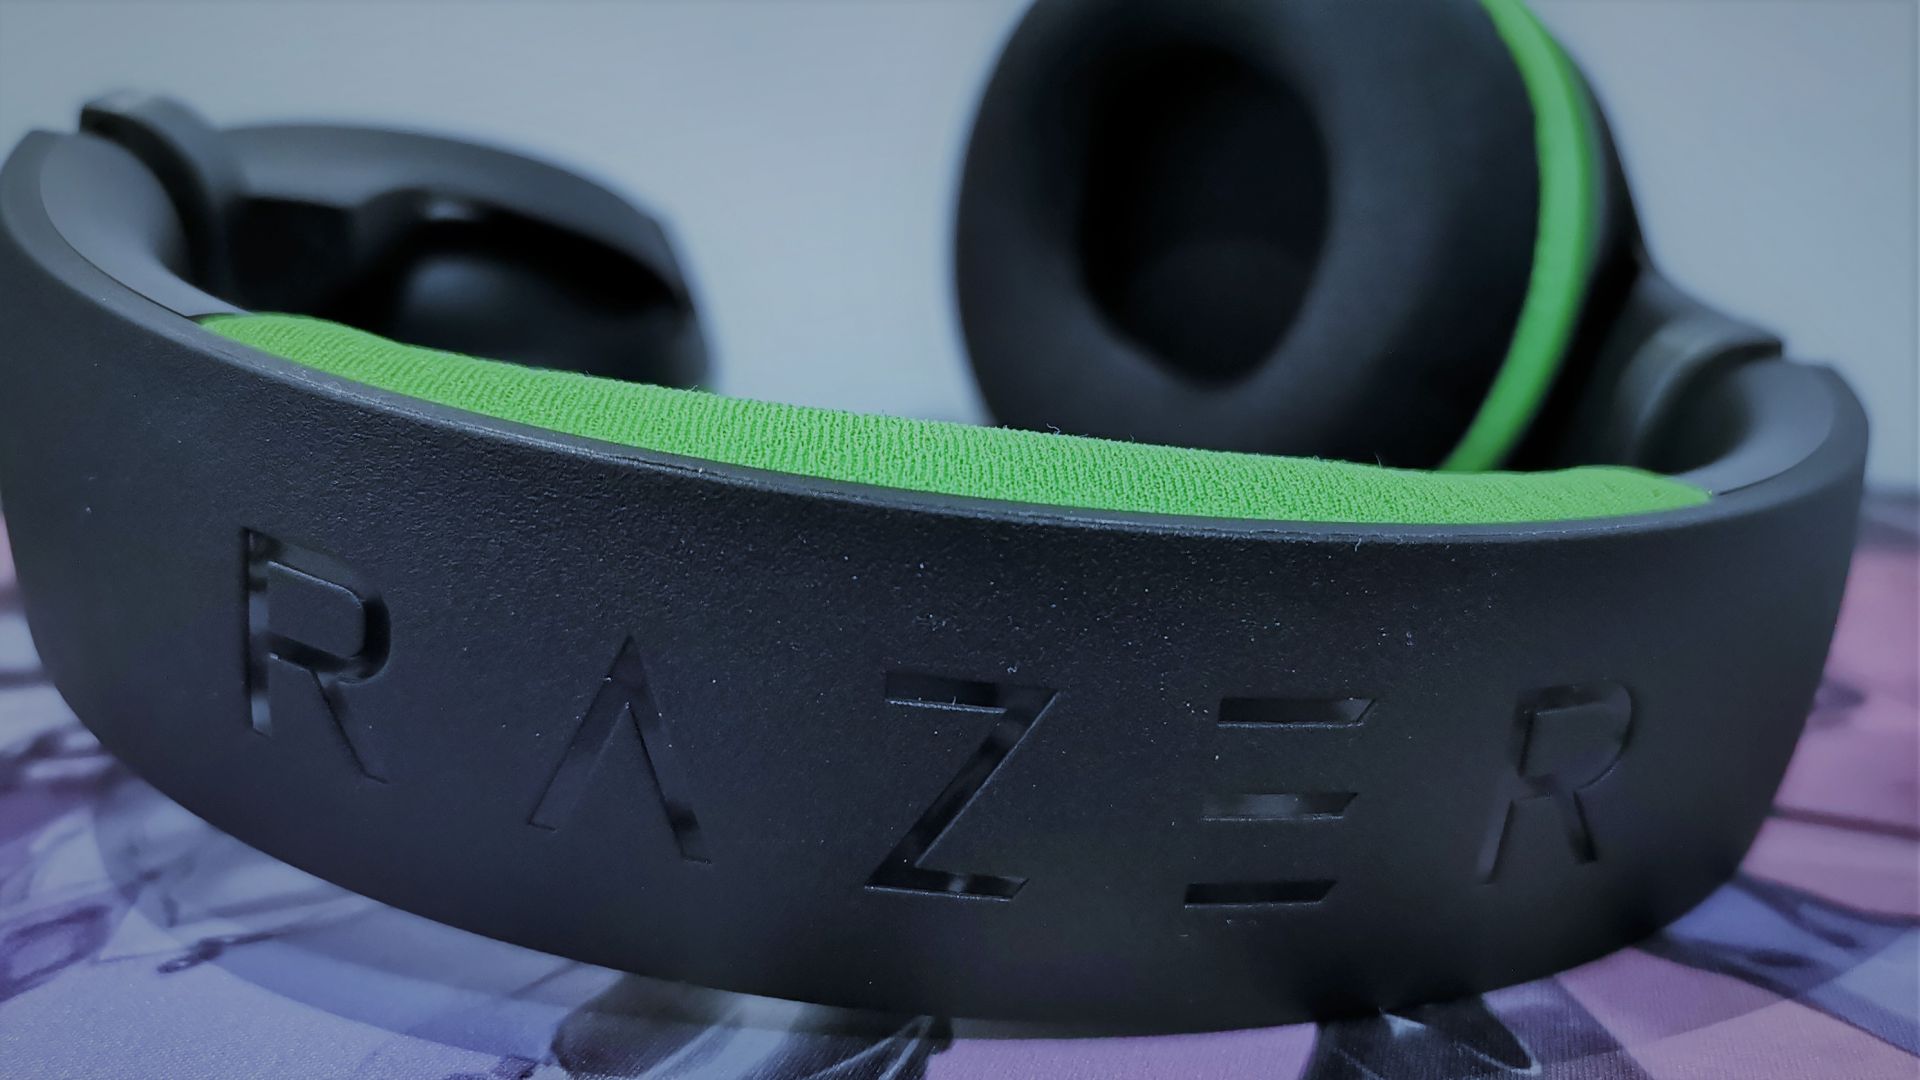 Analizamos los Razer Kaira Pro para Xbox, una experiencia sin igual - En esta ocasión os traemos nuestras impresiones tras 2 semanas de uso de los Razer Kaira Pro, unos auriculares inalámbricos sin igual exclusivos para Xbox.